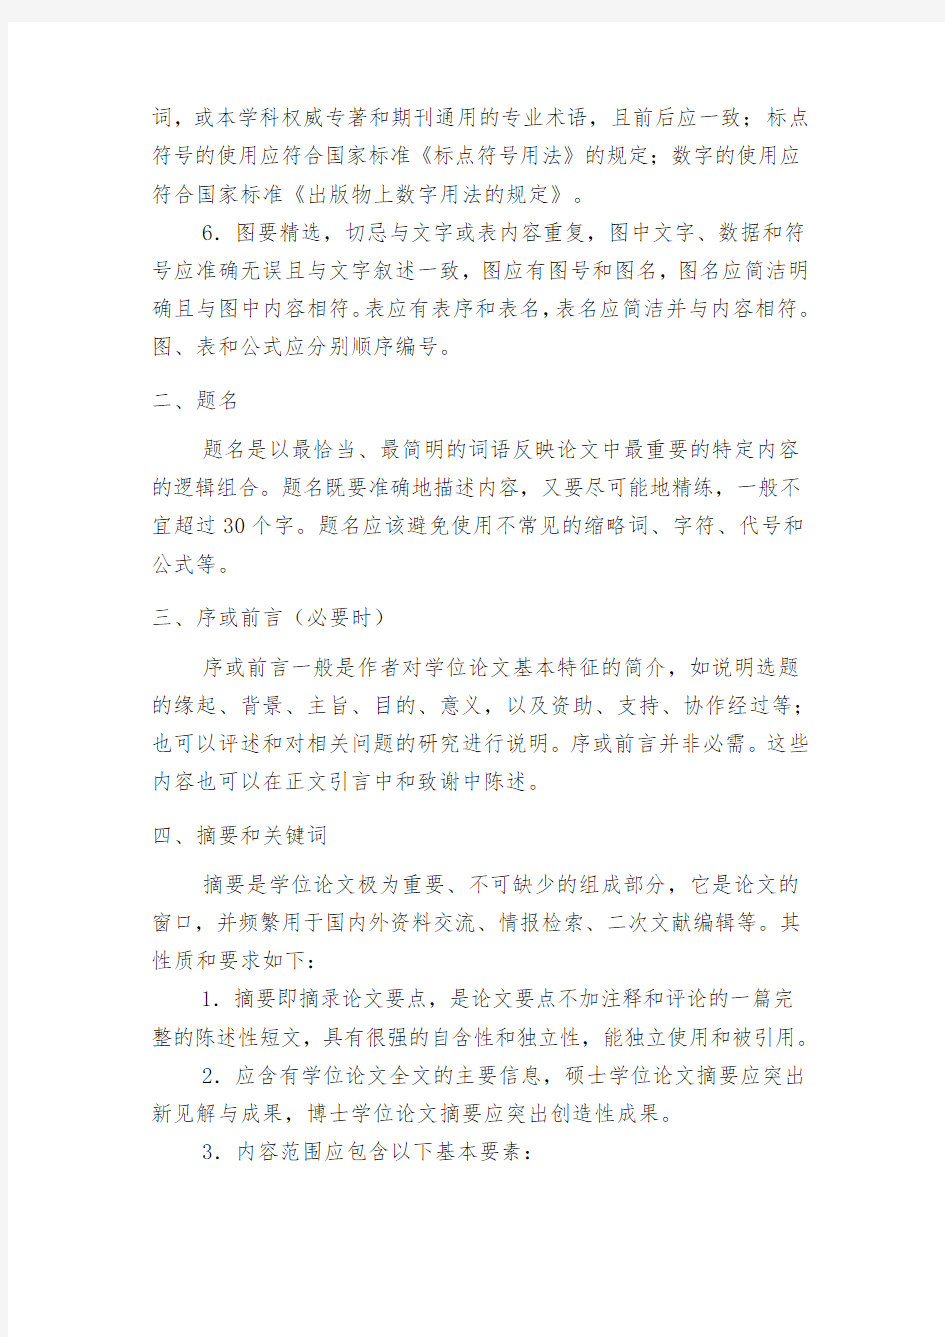 华中科技大学博士、硕士学位论文撰写规(2009年39号文件)